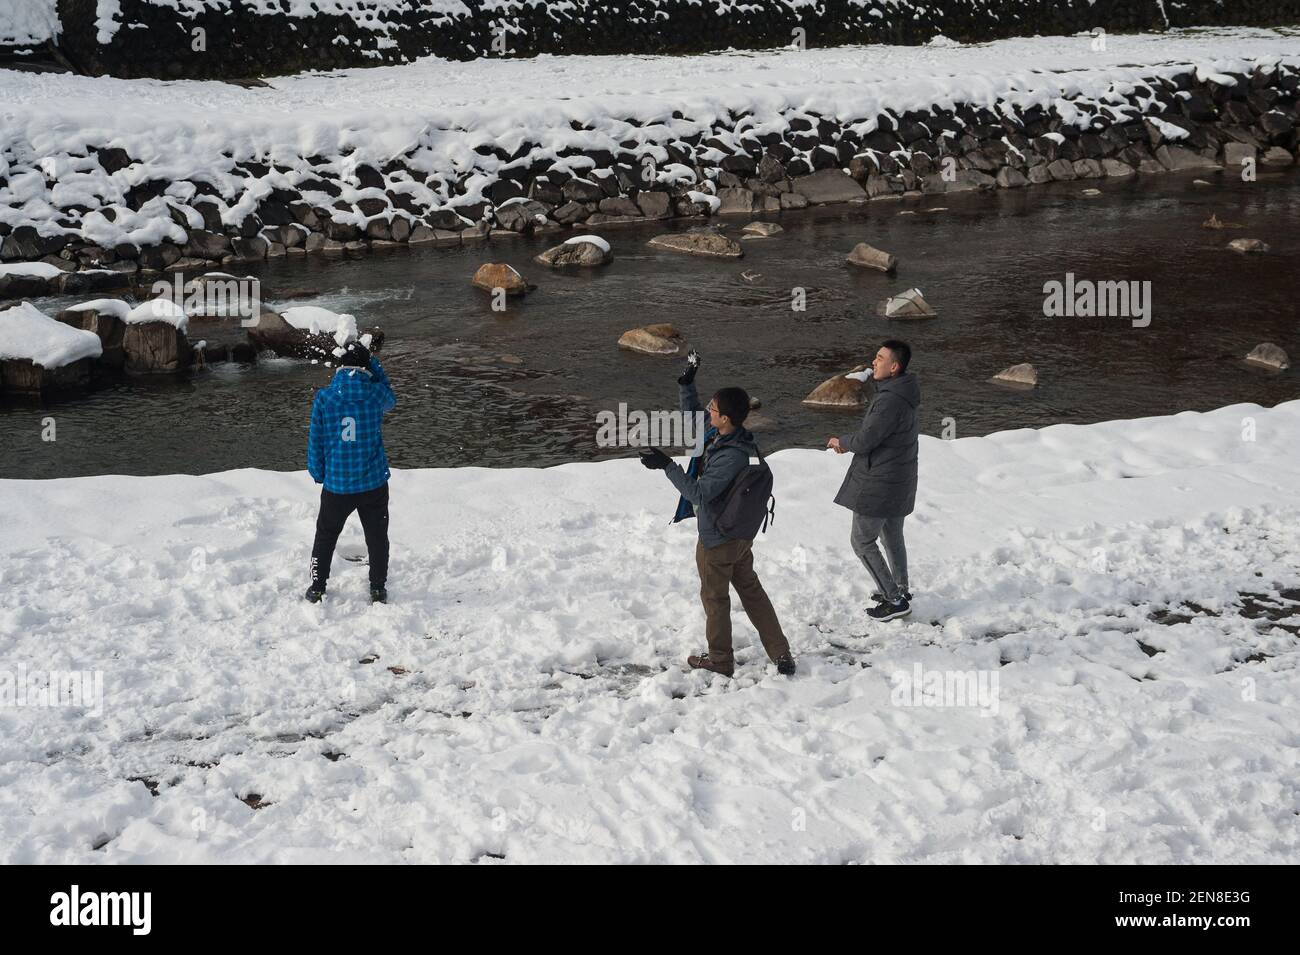 29.12.2017, Takayama, Gifu, Japan, Asia - A group of young men enjoy a snowball fight along the banks of the Miyagawa River. Stock Photo